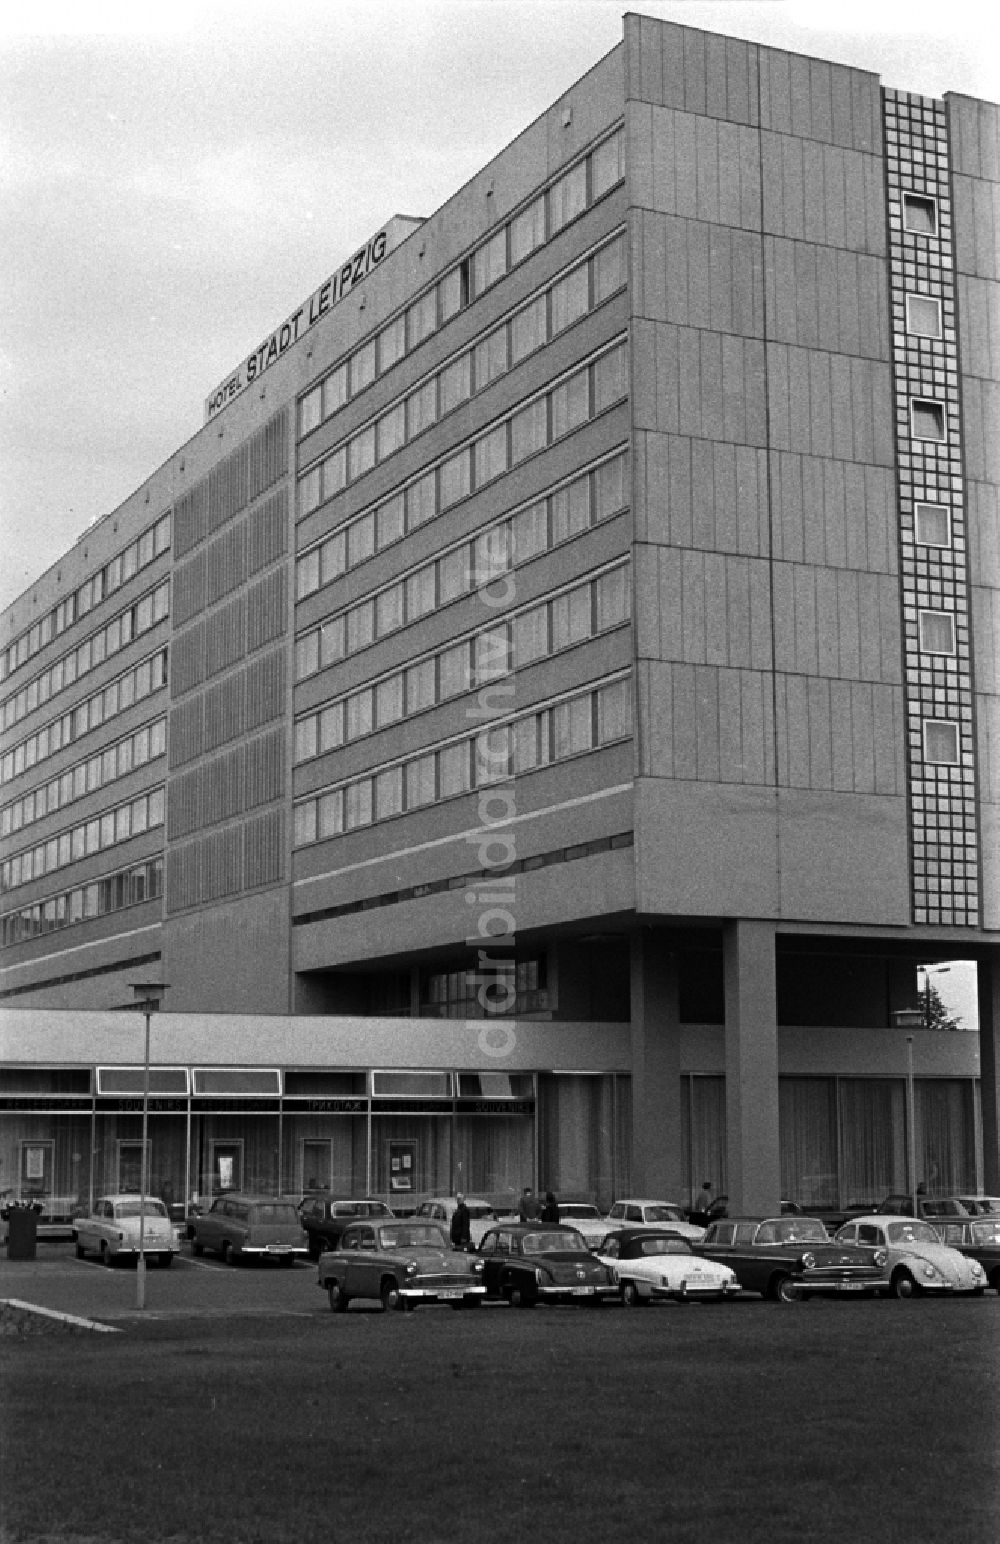 DDR-Bildarchiv: Leipzig - Das Interhotel Stadt Leipzig in Leipzig in Sachsen